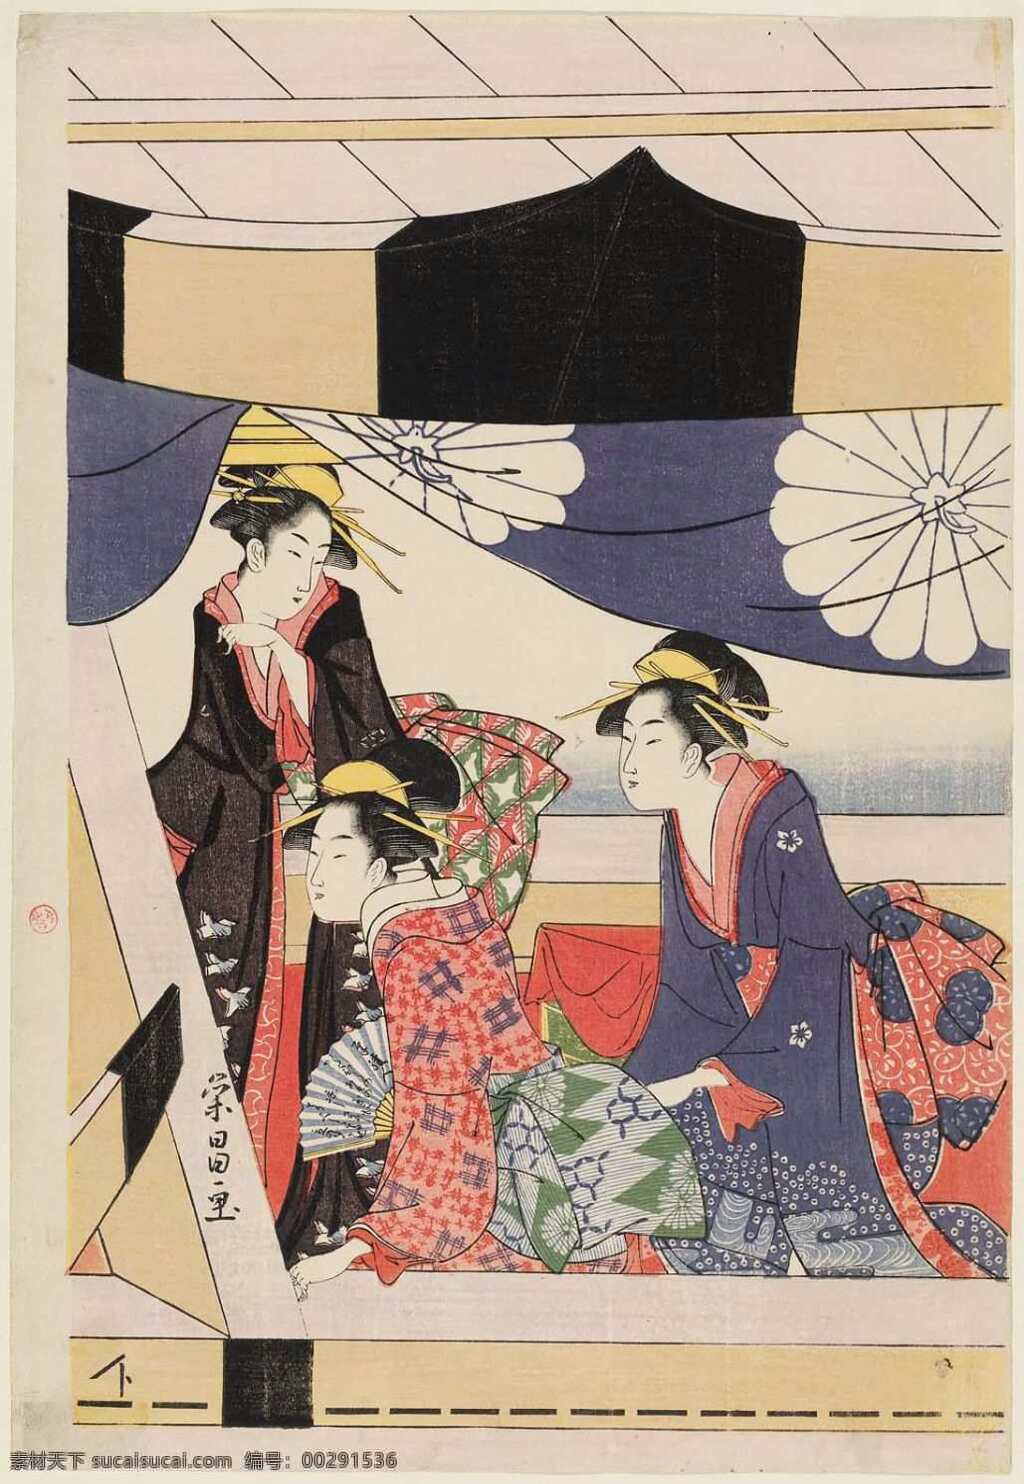 浮世绘 日本 京都 江户 和服 文化艺术 传统文化